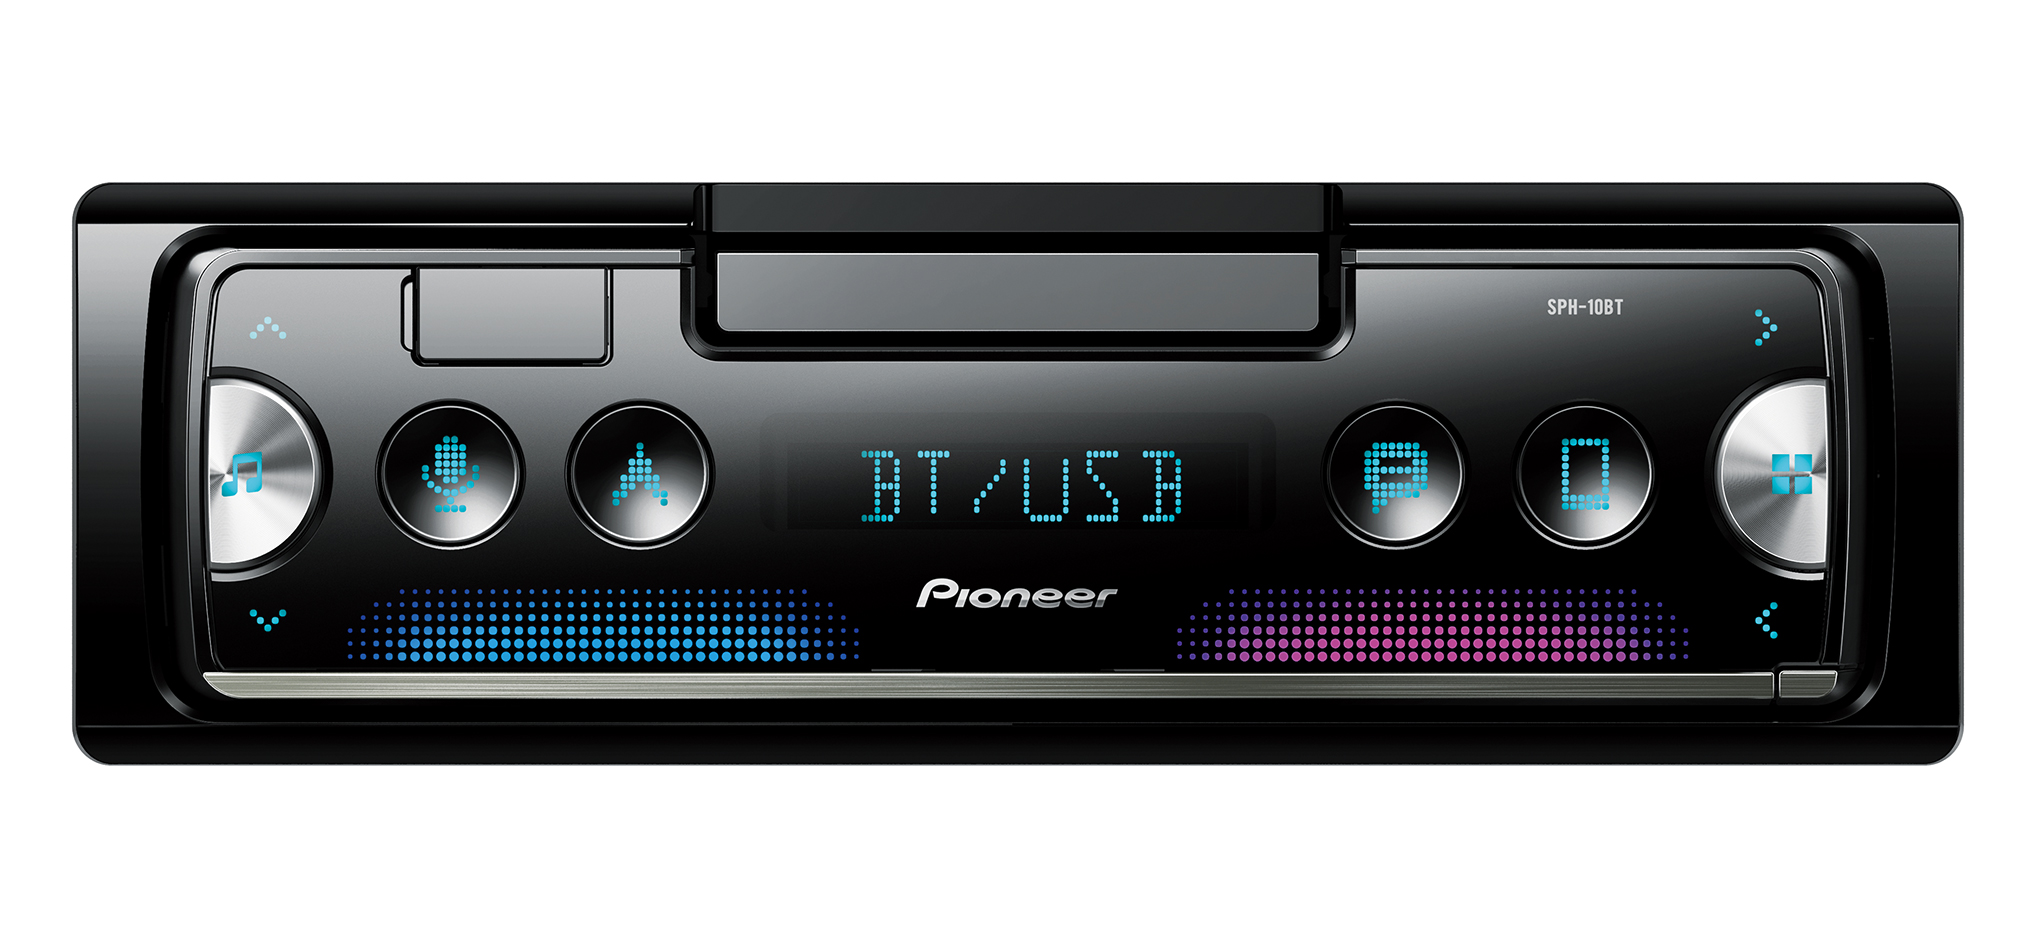 Nuevo Pioneer SPH-10BT 1 DIN reproductor multimedia digital Bluetooth teléfono cuna Pop fuera